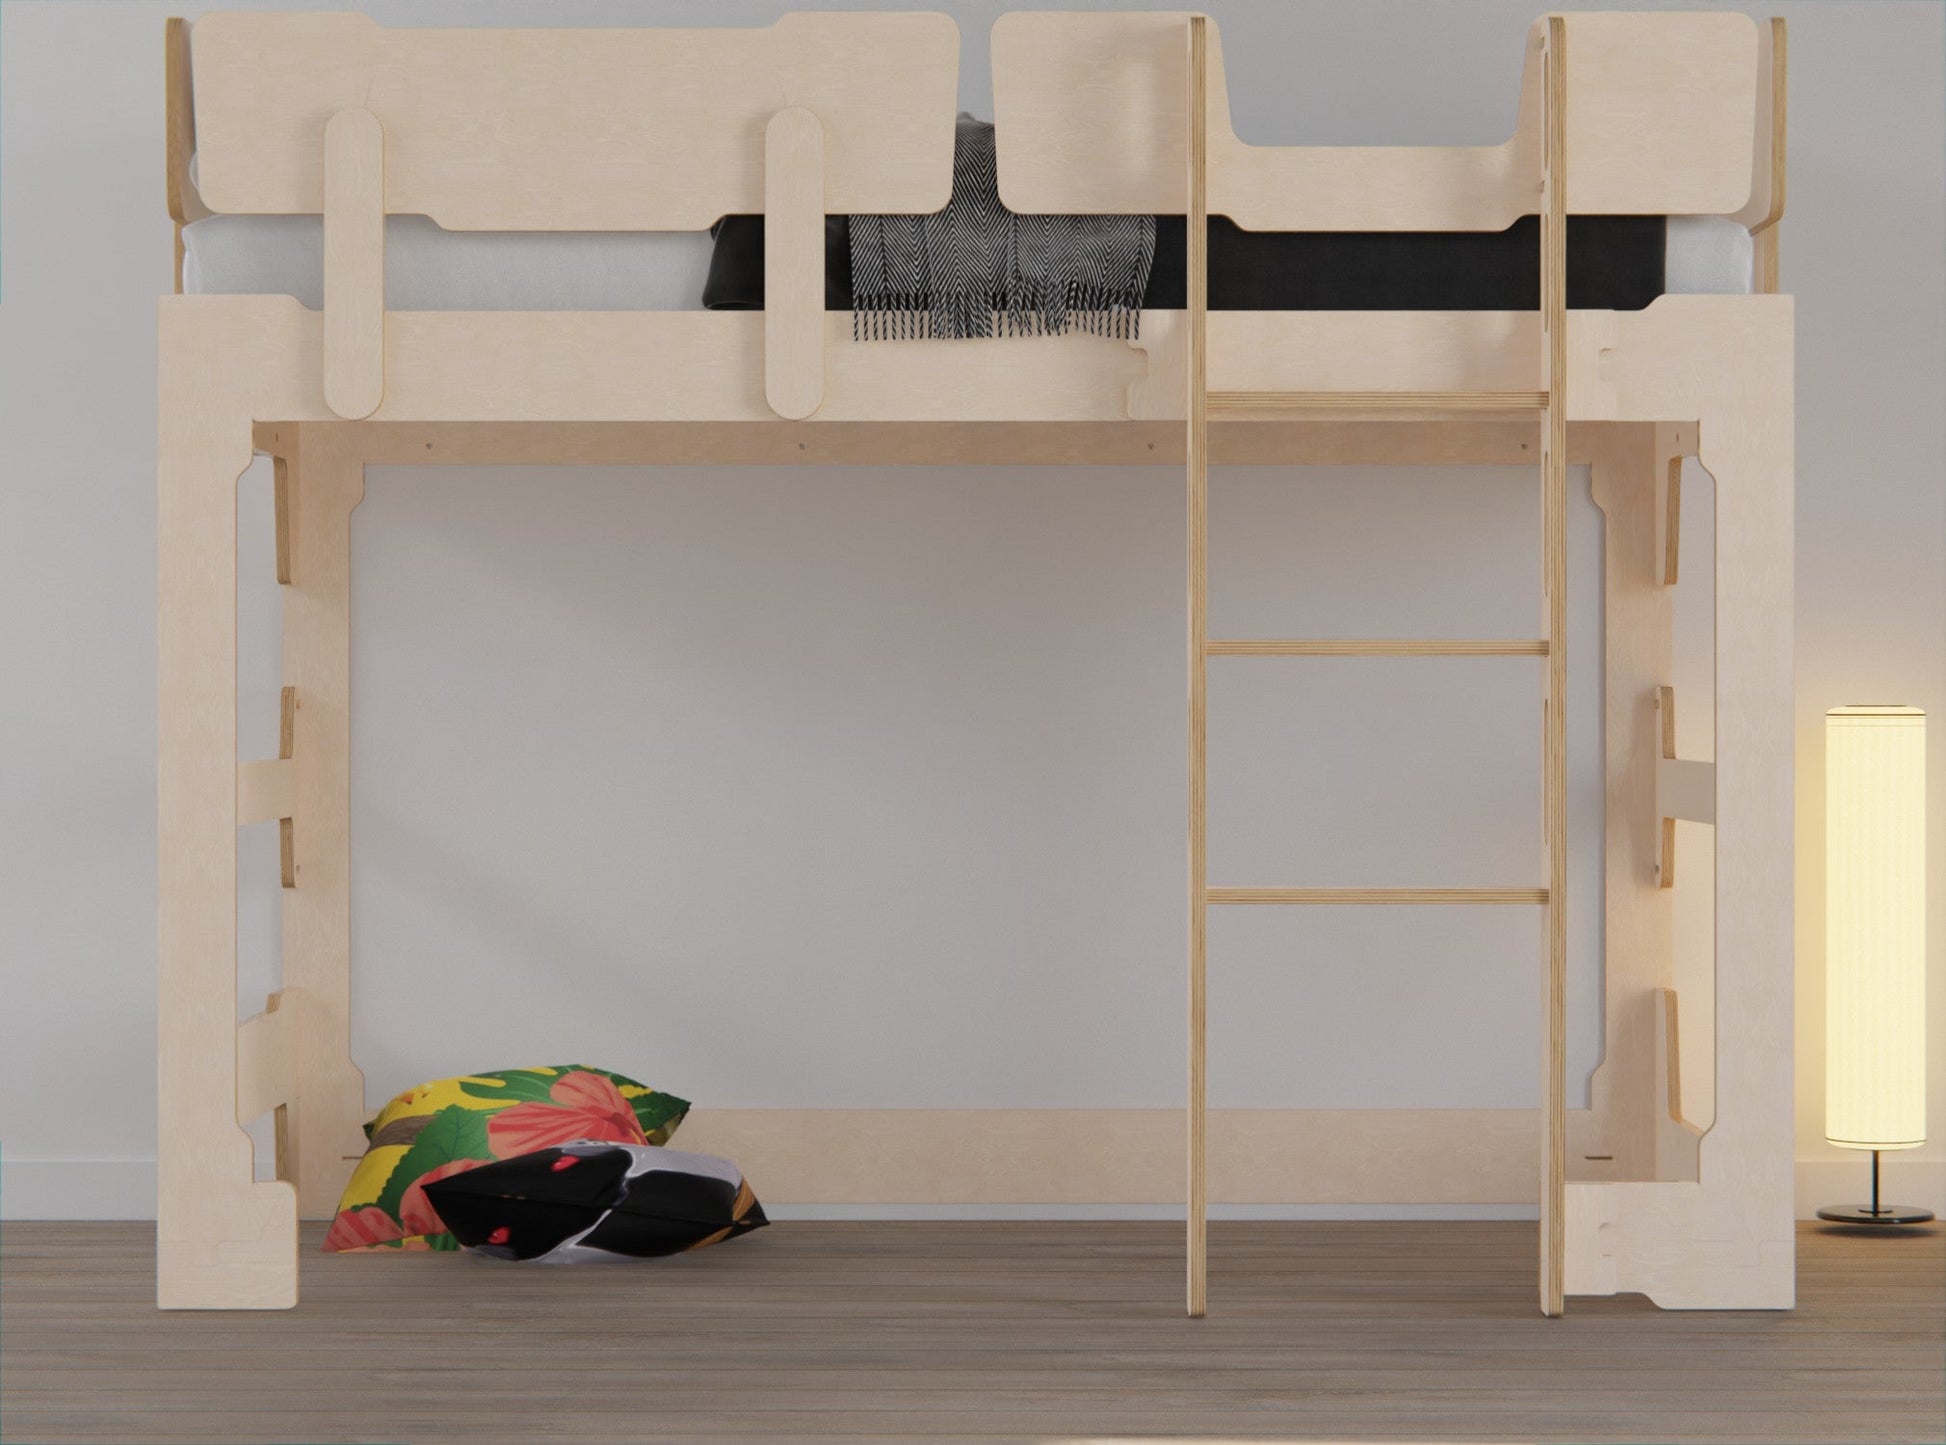 Bunk & Loft Bed "Transformer" - KitSmart Furniture